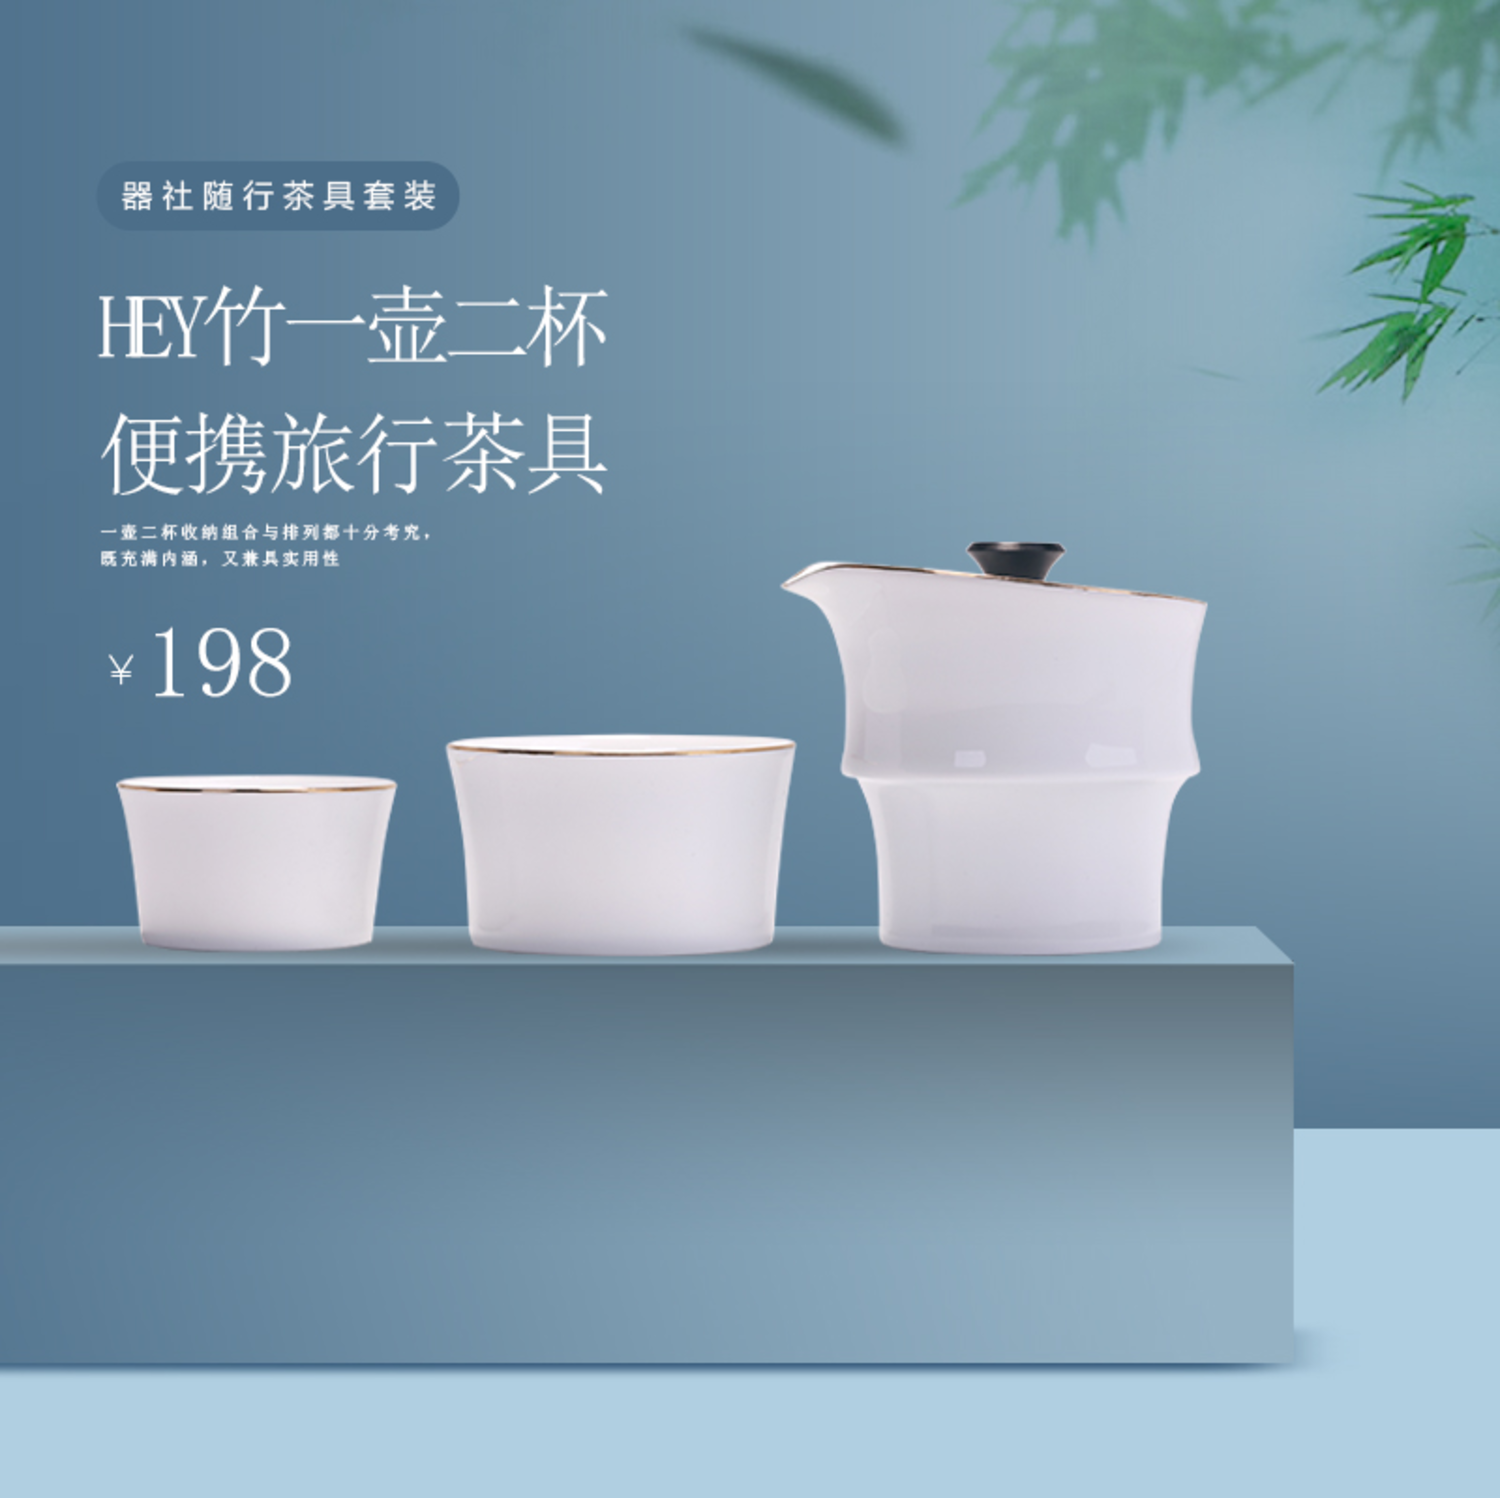 “HEY竹” 便携旅行茶具